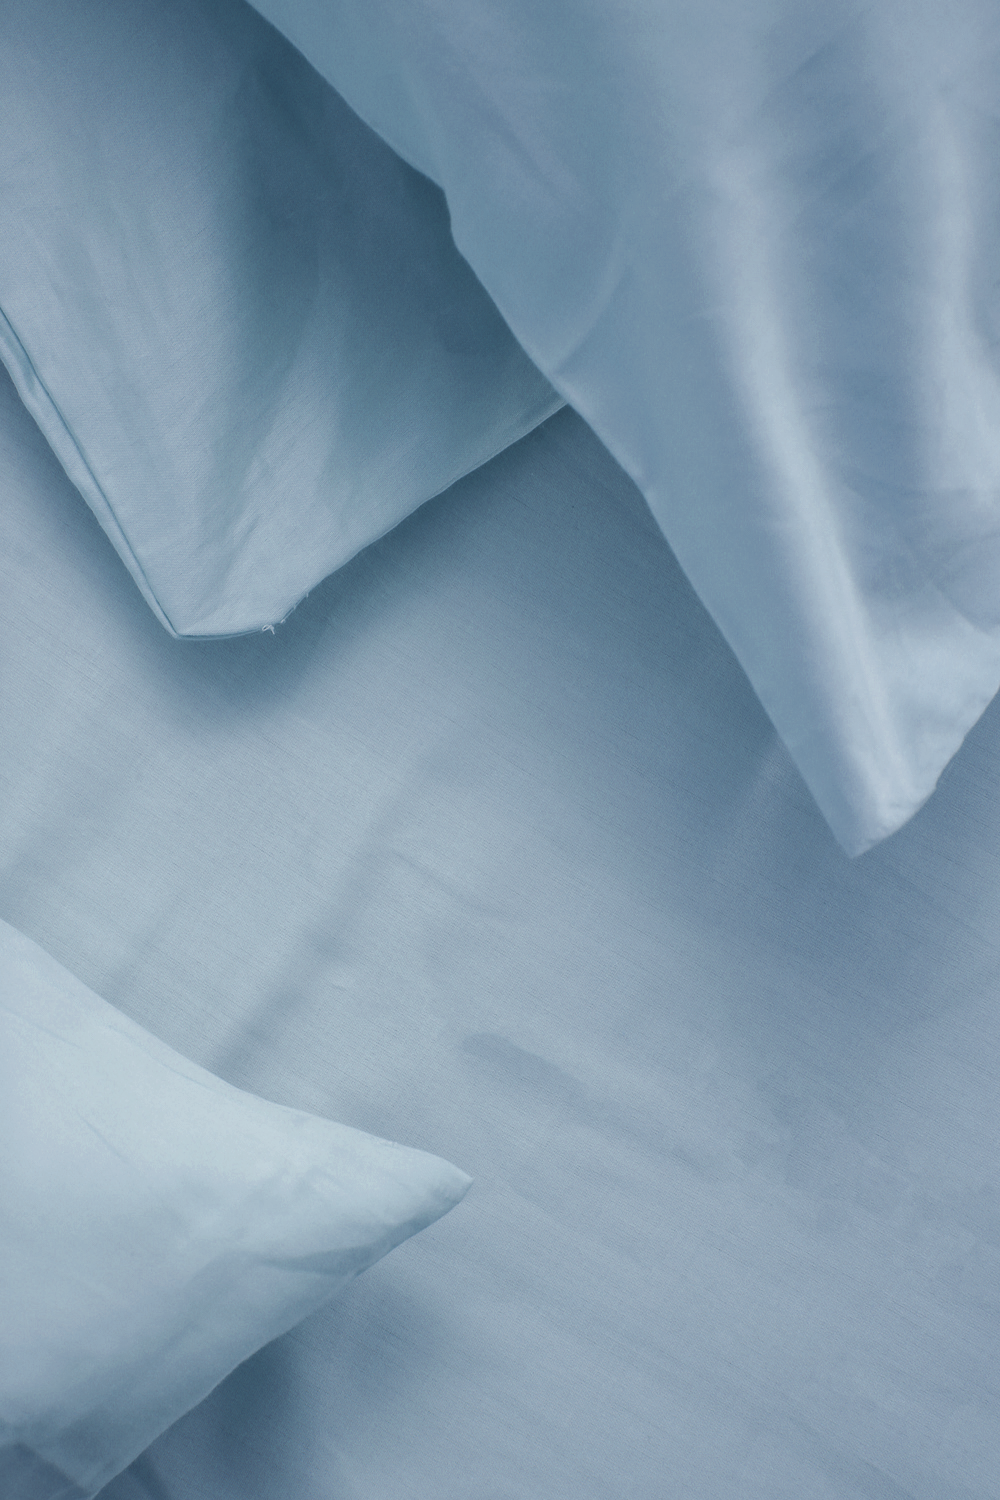 סדין מיטה זוגית 180/200 100% כותנה באריגת סאטן בצבע תכלת